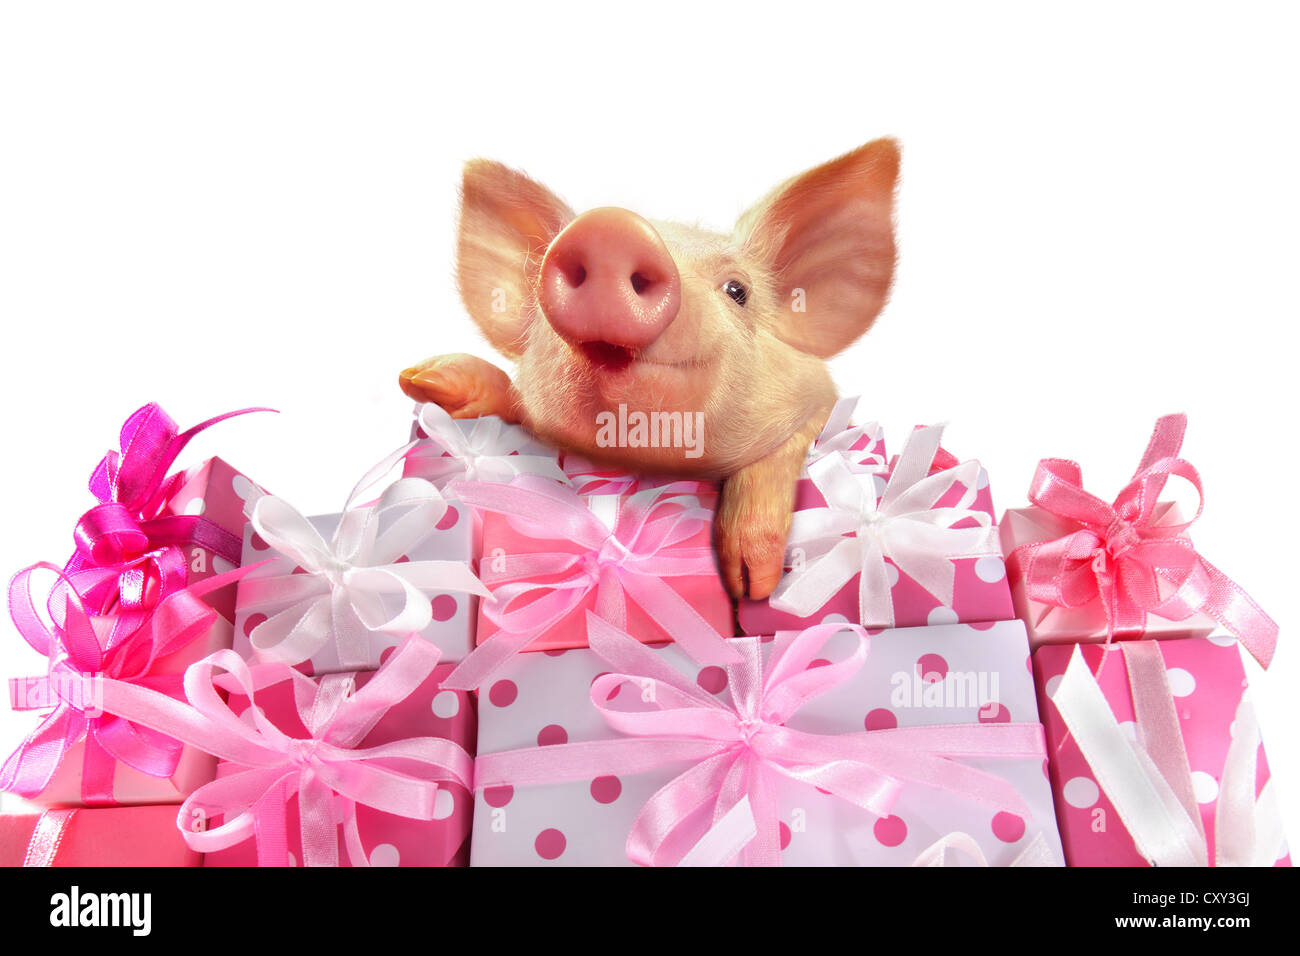 Piglet sur une pile de cadeaux rose Banque D'Images